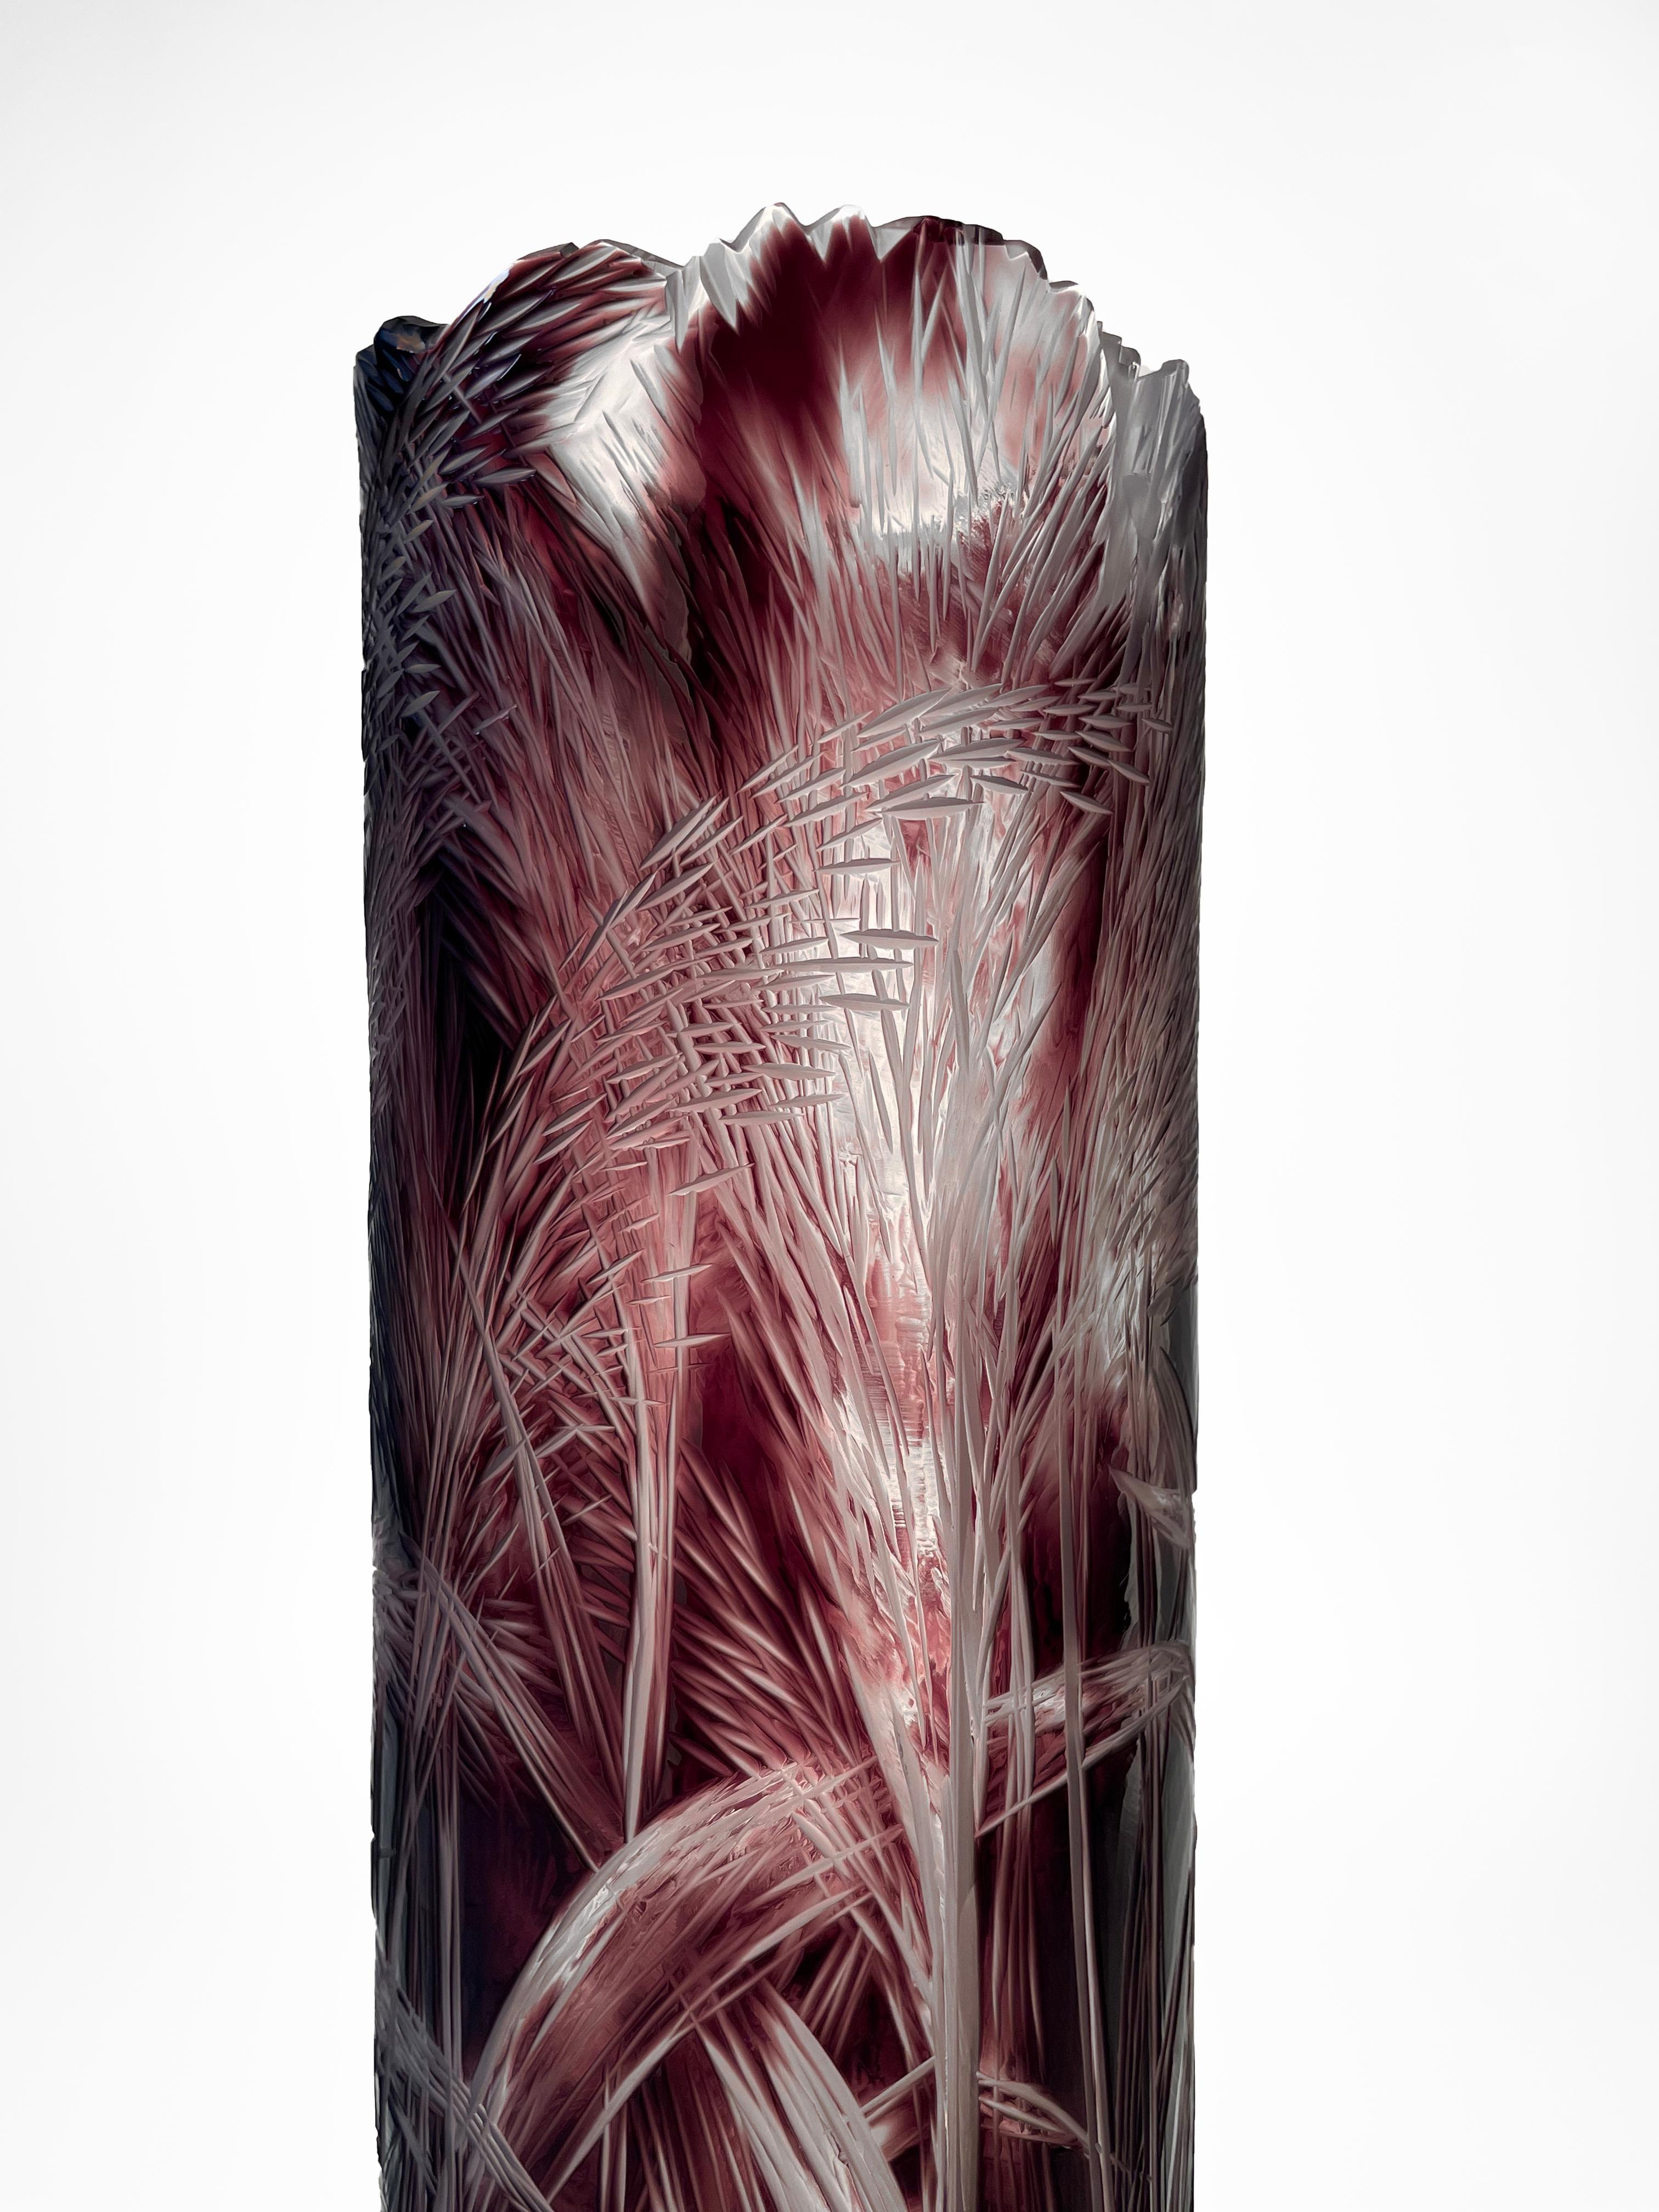 Le vase est fait de verre superposé et a une forme cylindrique. Le motif organique gravé à la main traverse le verre massif violet jusqu'à la couche de verre cristallin. La gravure représente des roseaux, des tiges naturelles. La gravure est